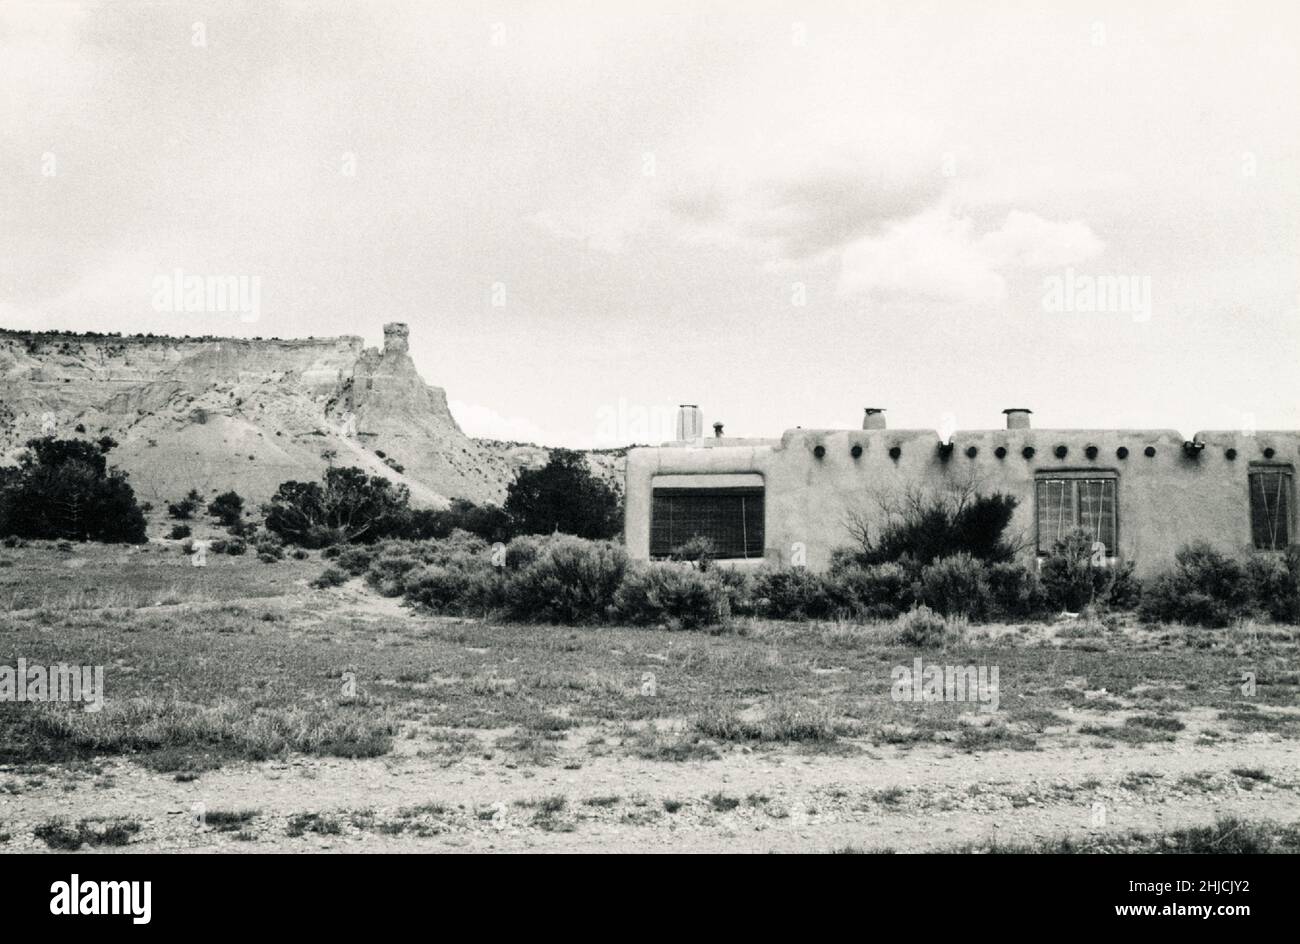 The Ghost Ranch, die Abiquiu, New Mexico Residenz der Künstlerin Georgia O'Keeffe, wohin sie 1940 zog. Aufgenommen im Jahr 1971. O'Keeffe war ein bedeutender moderner Künstler, dessen Arbeiten von abstrakt bis gegenständlich reichten und oft beides verschmolzen. Geboren 1887, gestorben 1986. Stockfoto